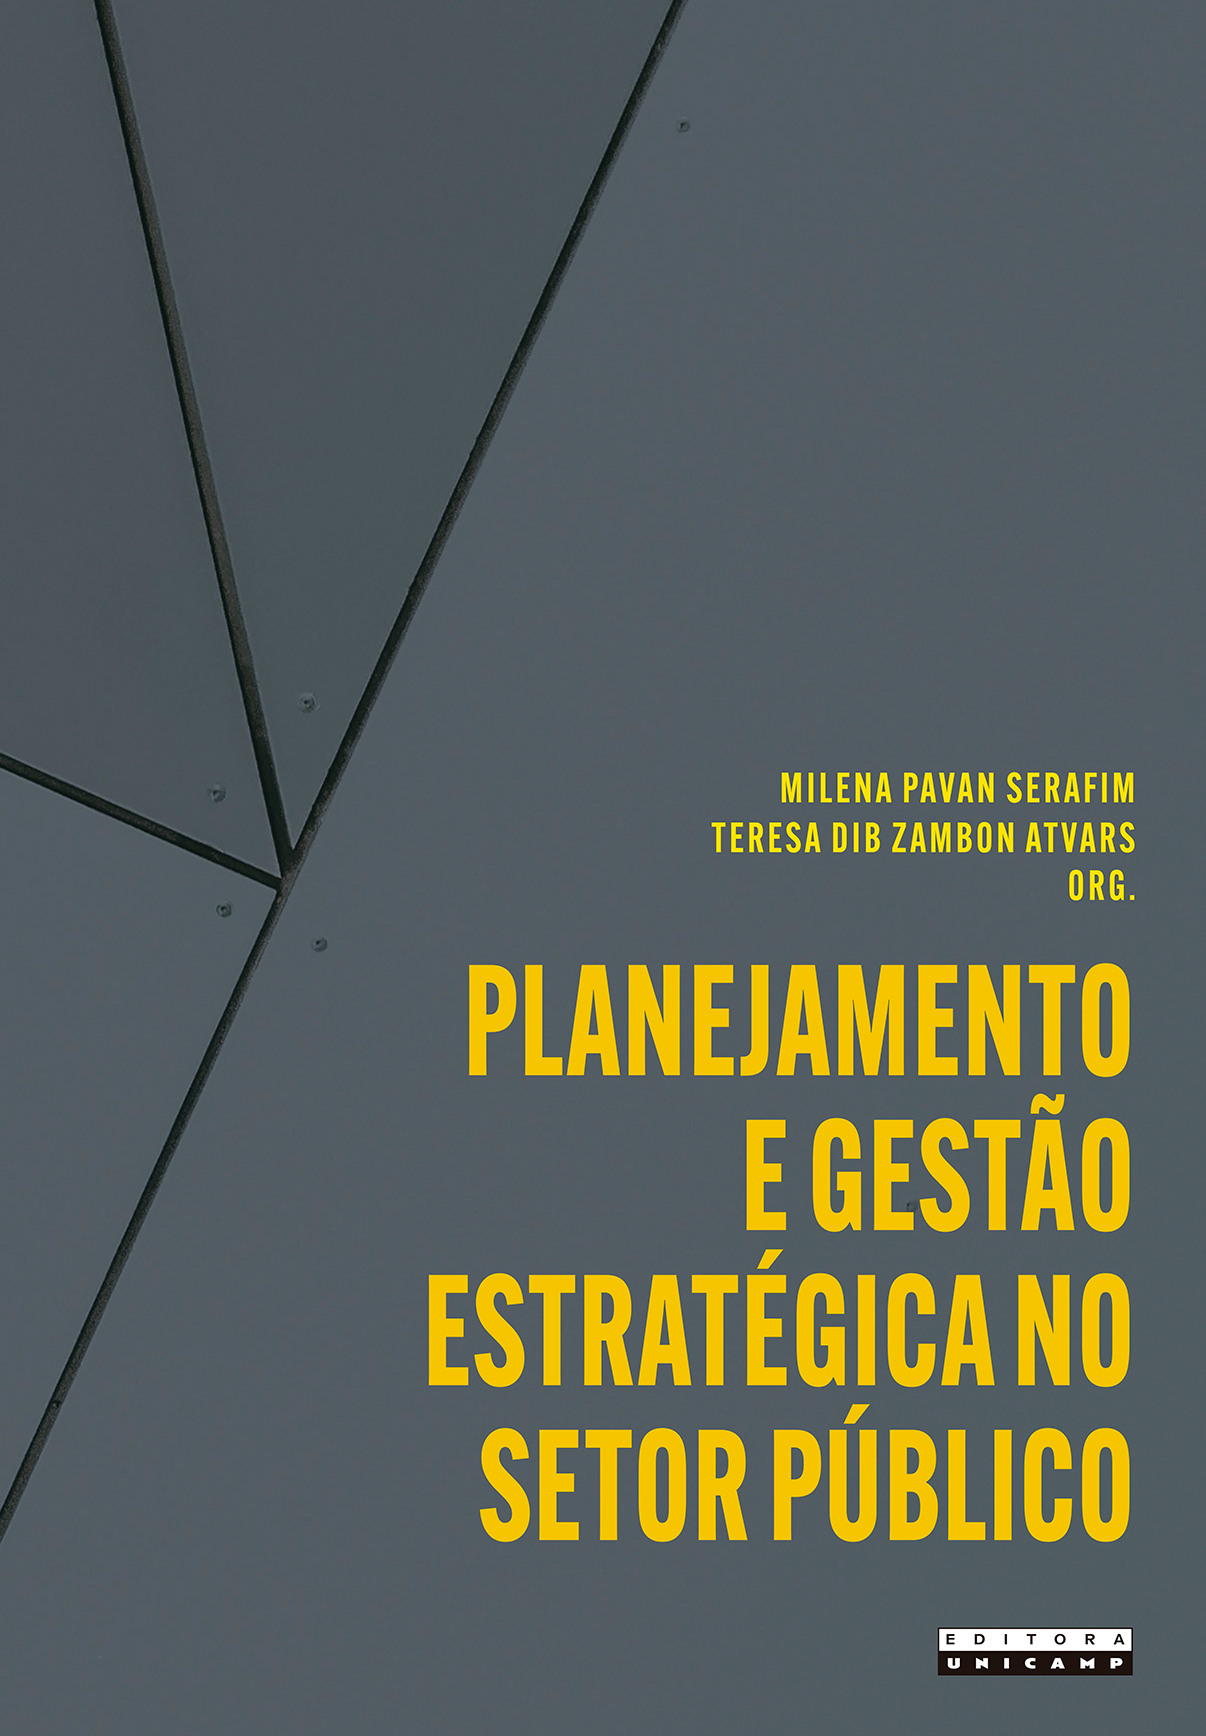 Planejamento e gestão estratégica no setor público. Aplicações e reflexões a partir da UNICAMP, livro de Milena Pavan Serafim, Teresa Dib Zambon Atvars